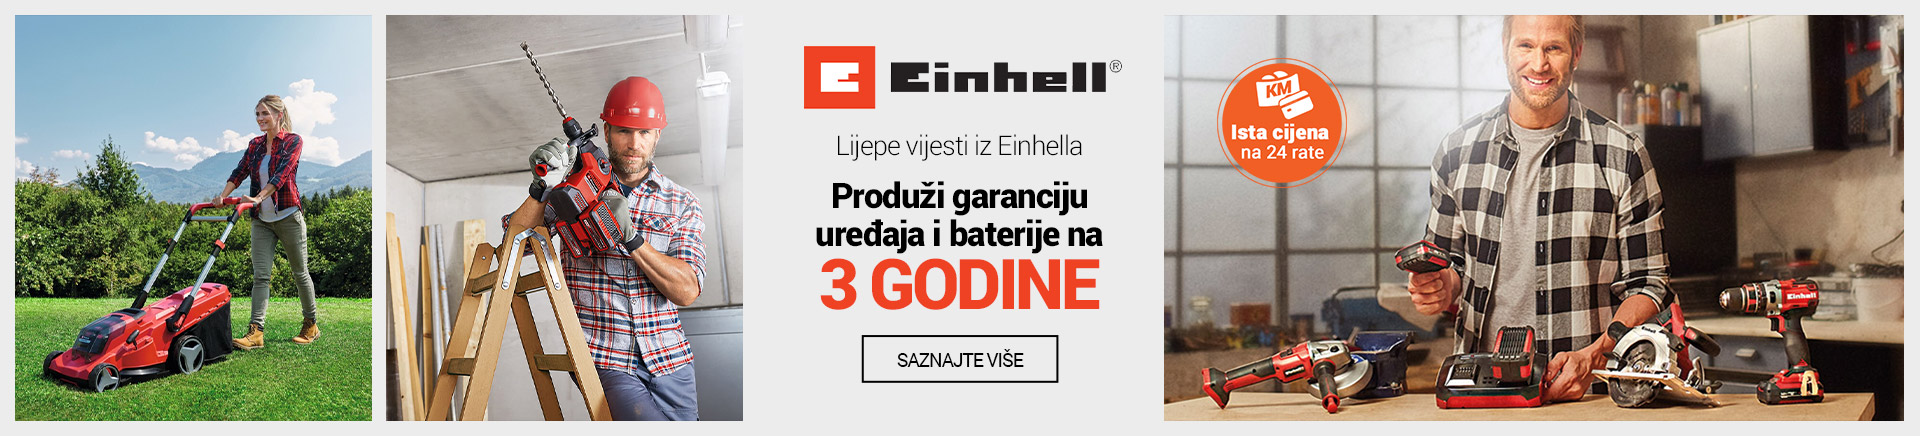 BA Einhell Produzi garanciju baterije 3 godine MOBILE 380 X 436.jpg